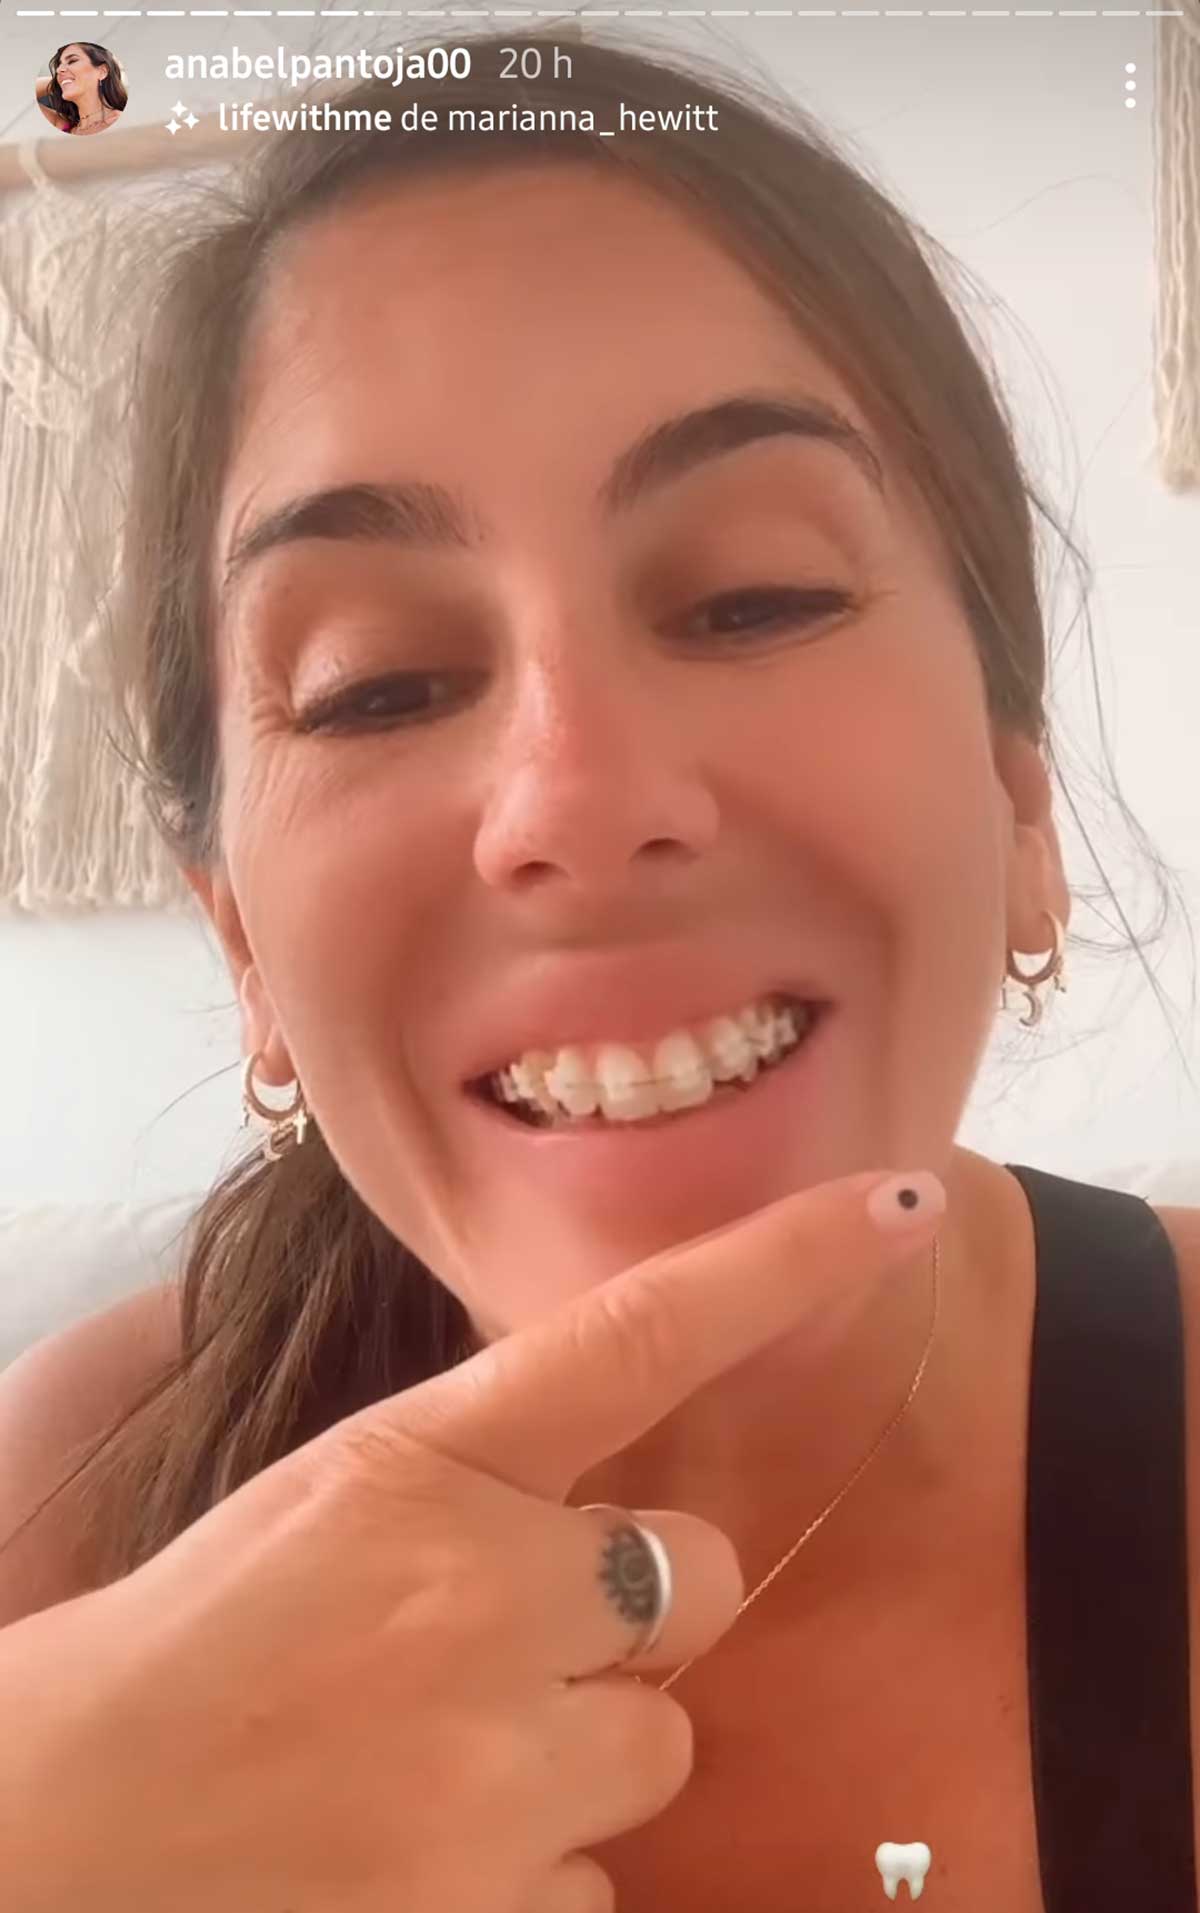 Anabel Pantoja da el paso por fin y se pone aparatos en los dientes: esta es su nueva sonrisa